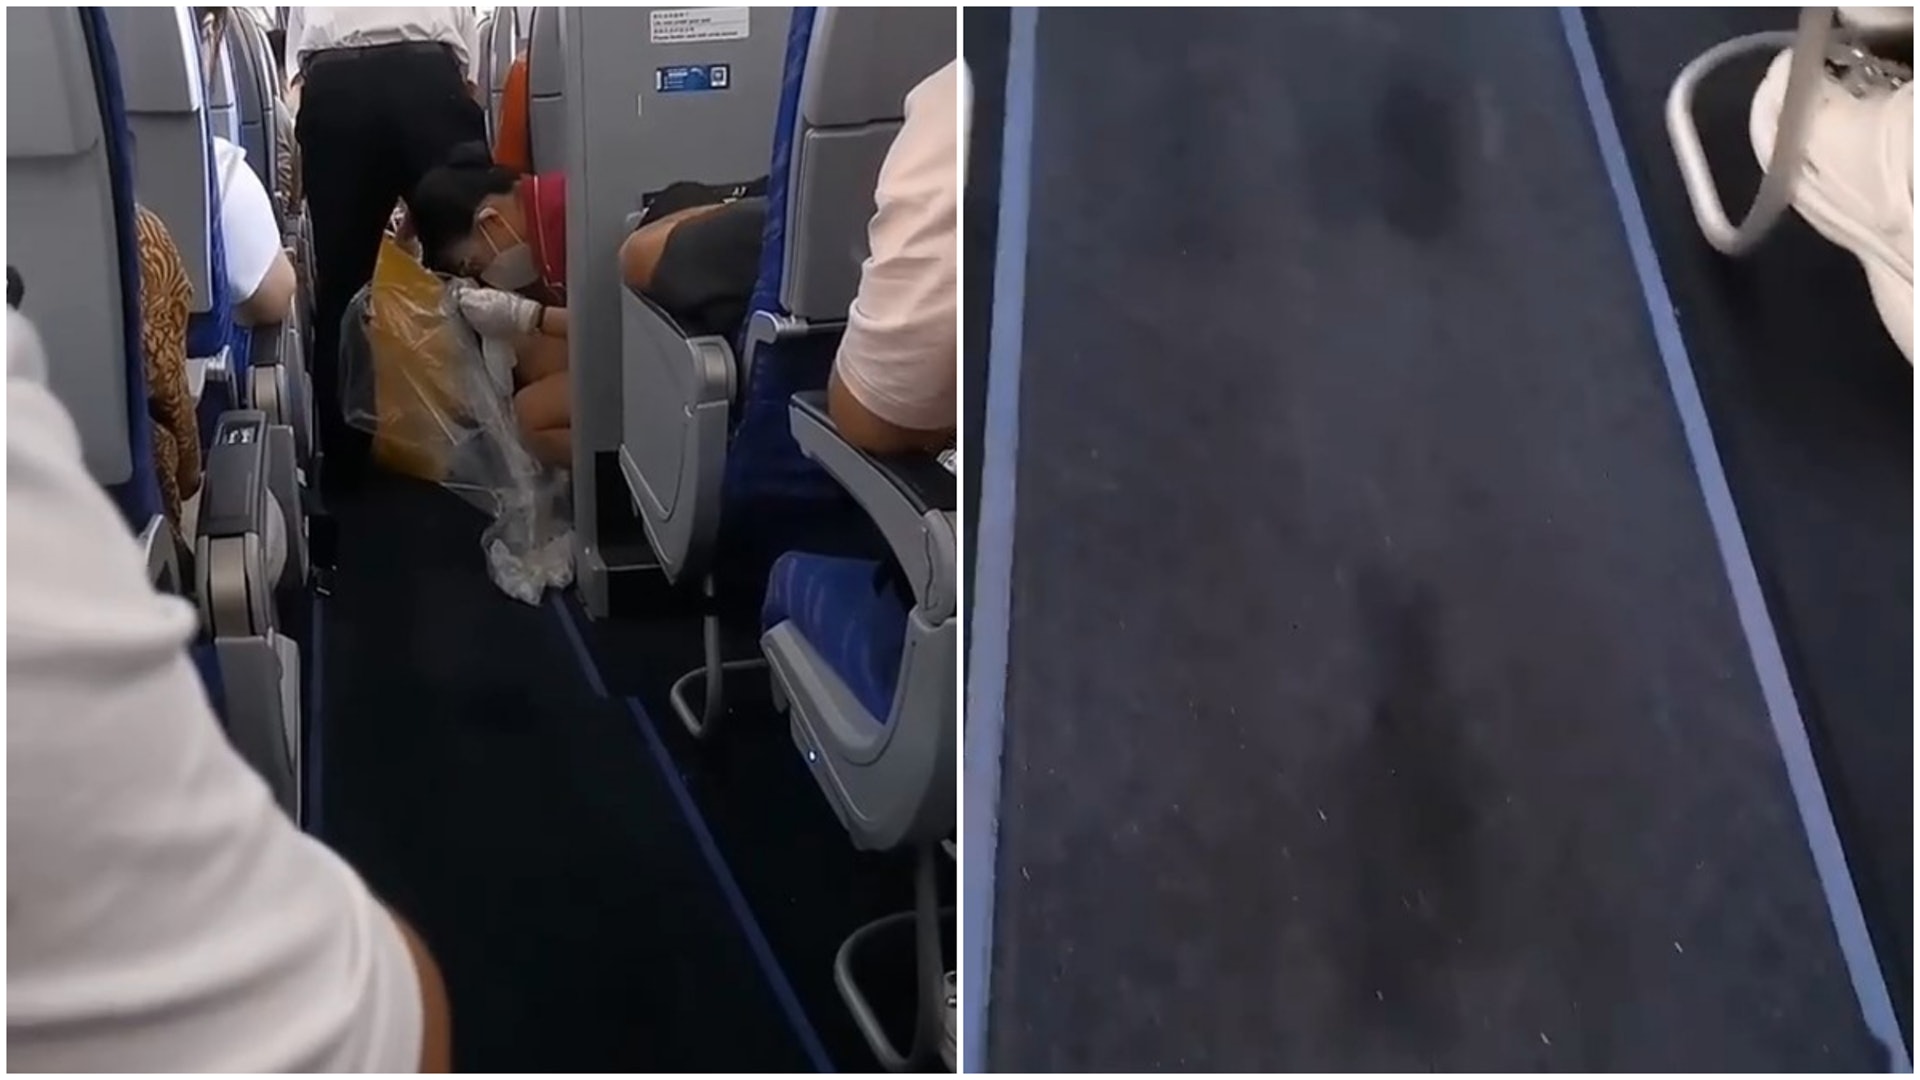 空姐需要蹲下彎腰徒手清潔機艙通道上所留下的「腳印」。(微博)